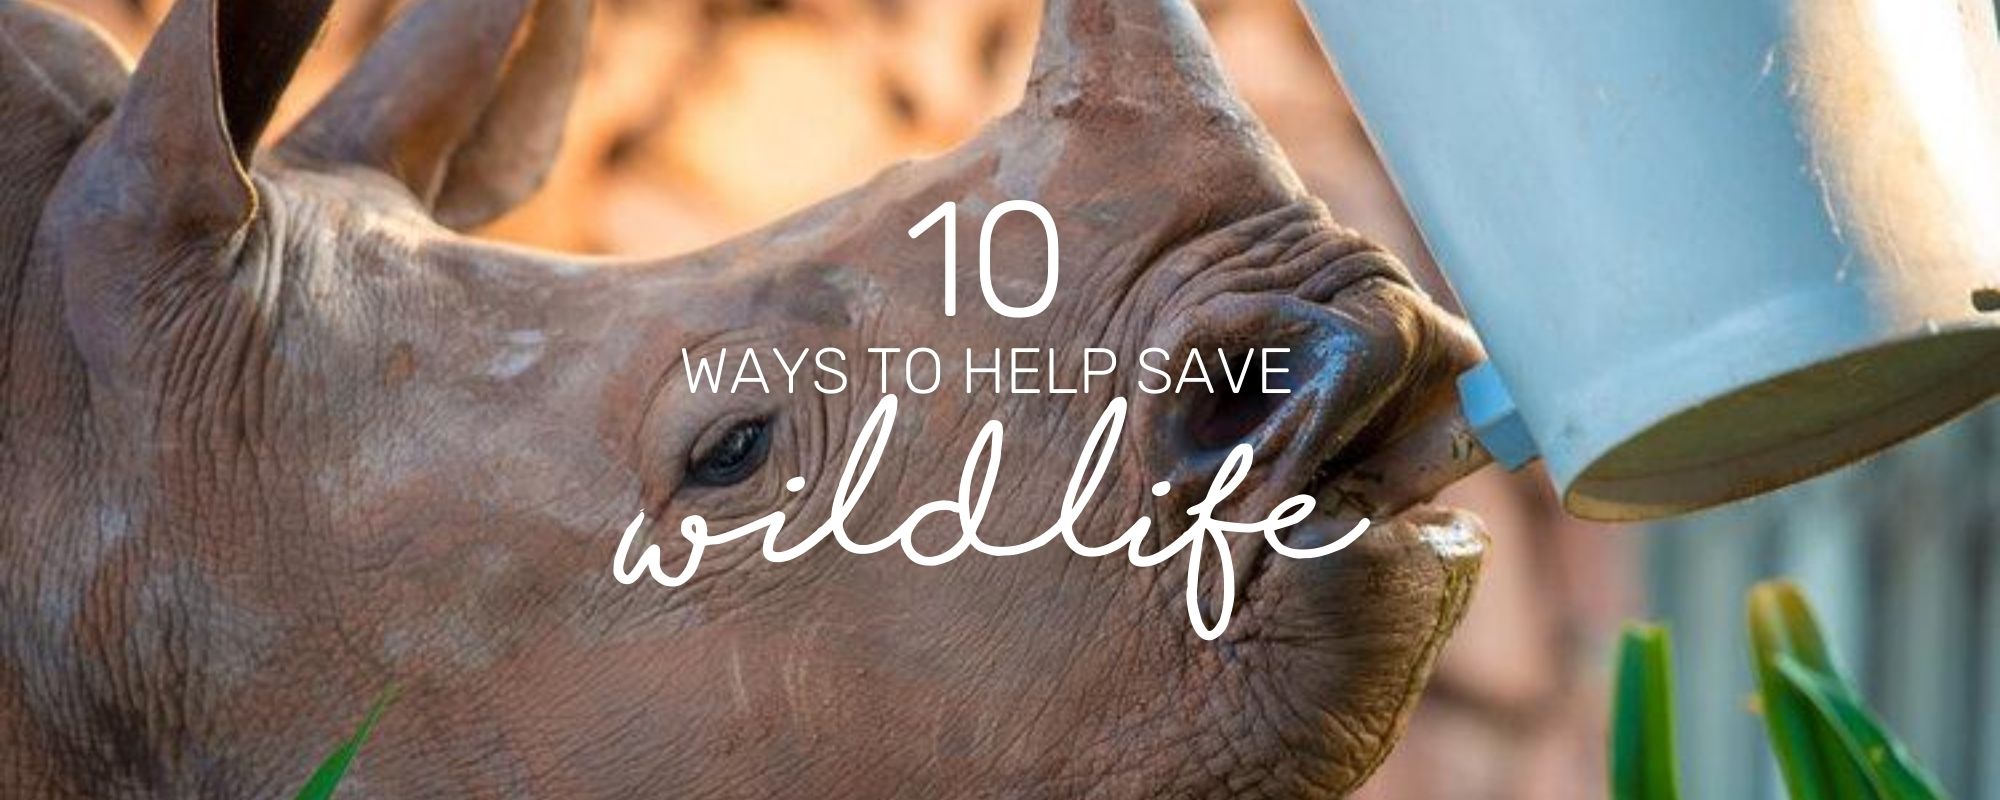 10 SIMPLE WAYS TO SAVE WILDLIFE